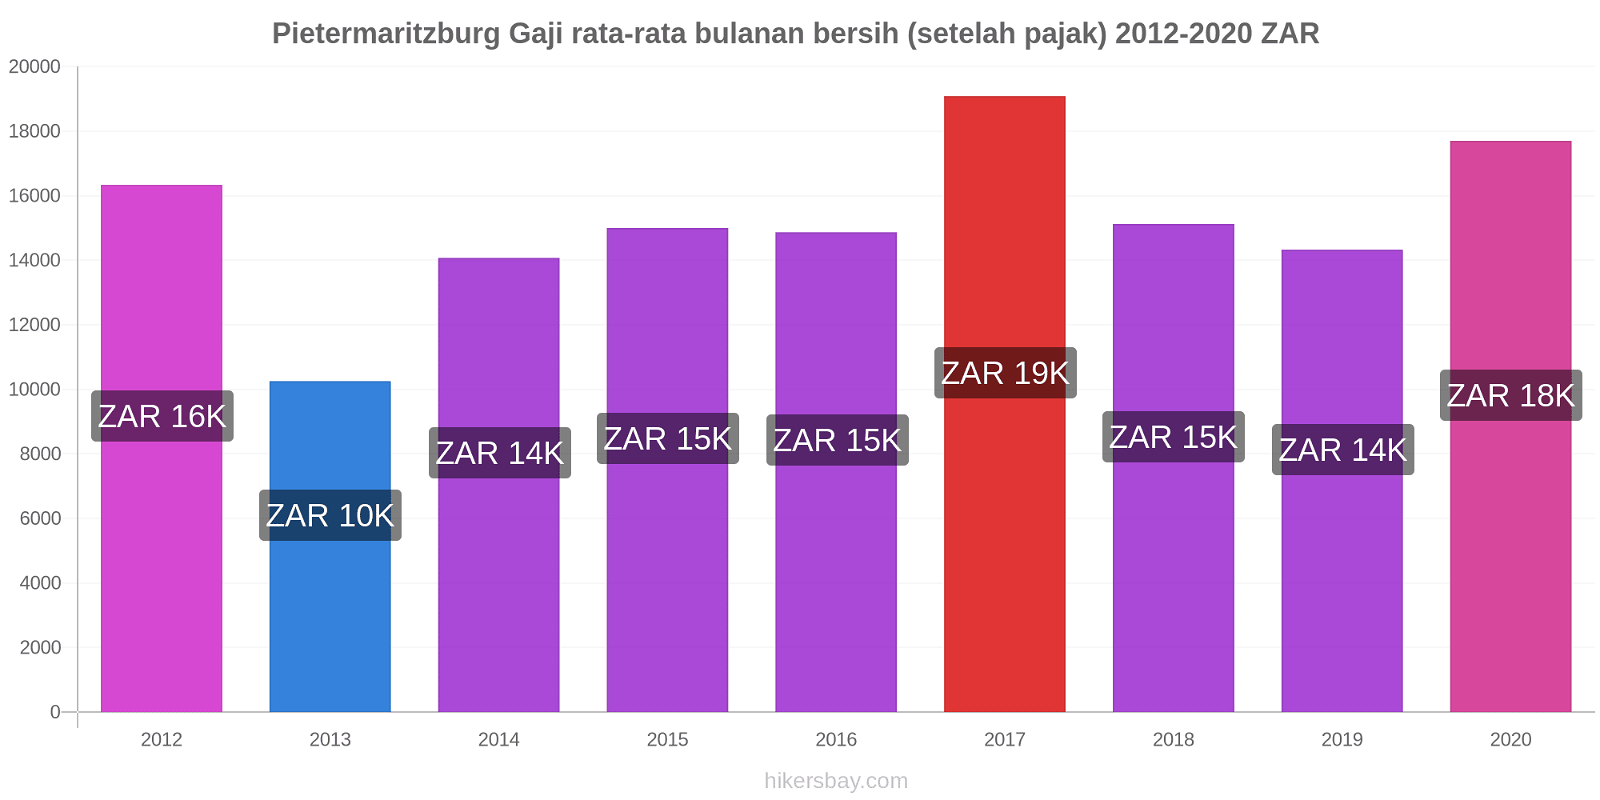 Pietermaritzburg perubahan harga Gaji rata-rata bulanan bersih (setelah pajak) hikersbay.com